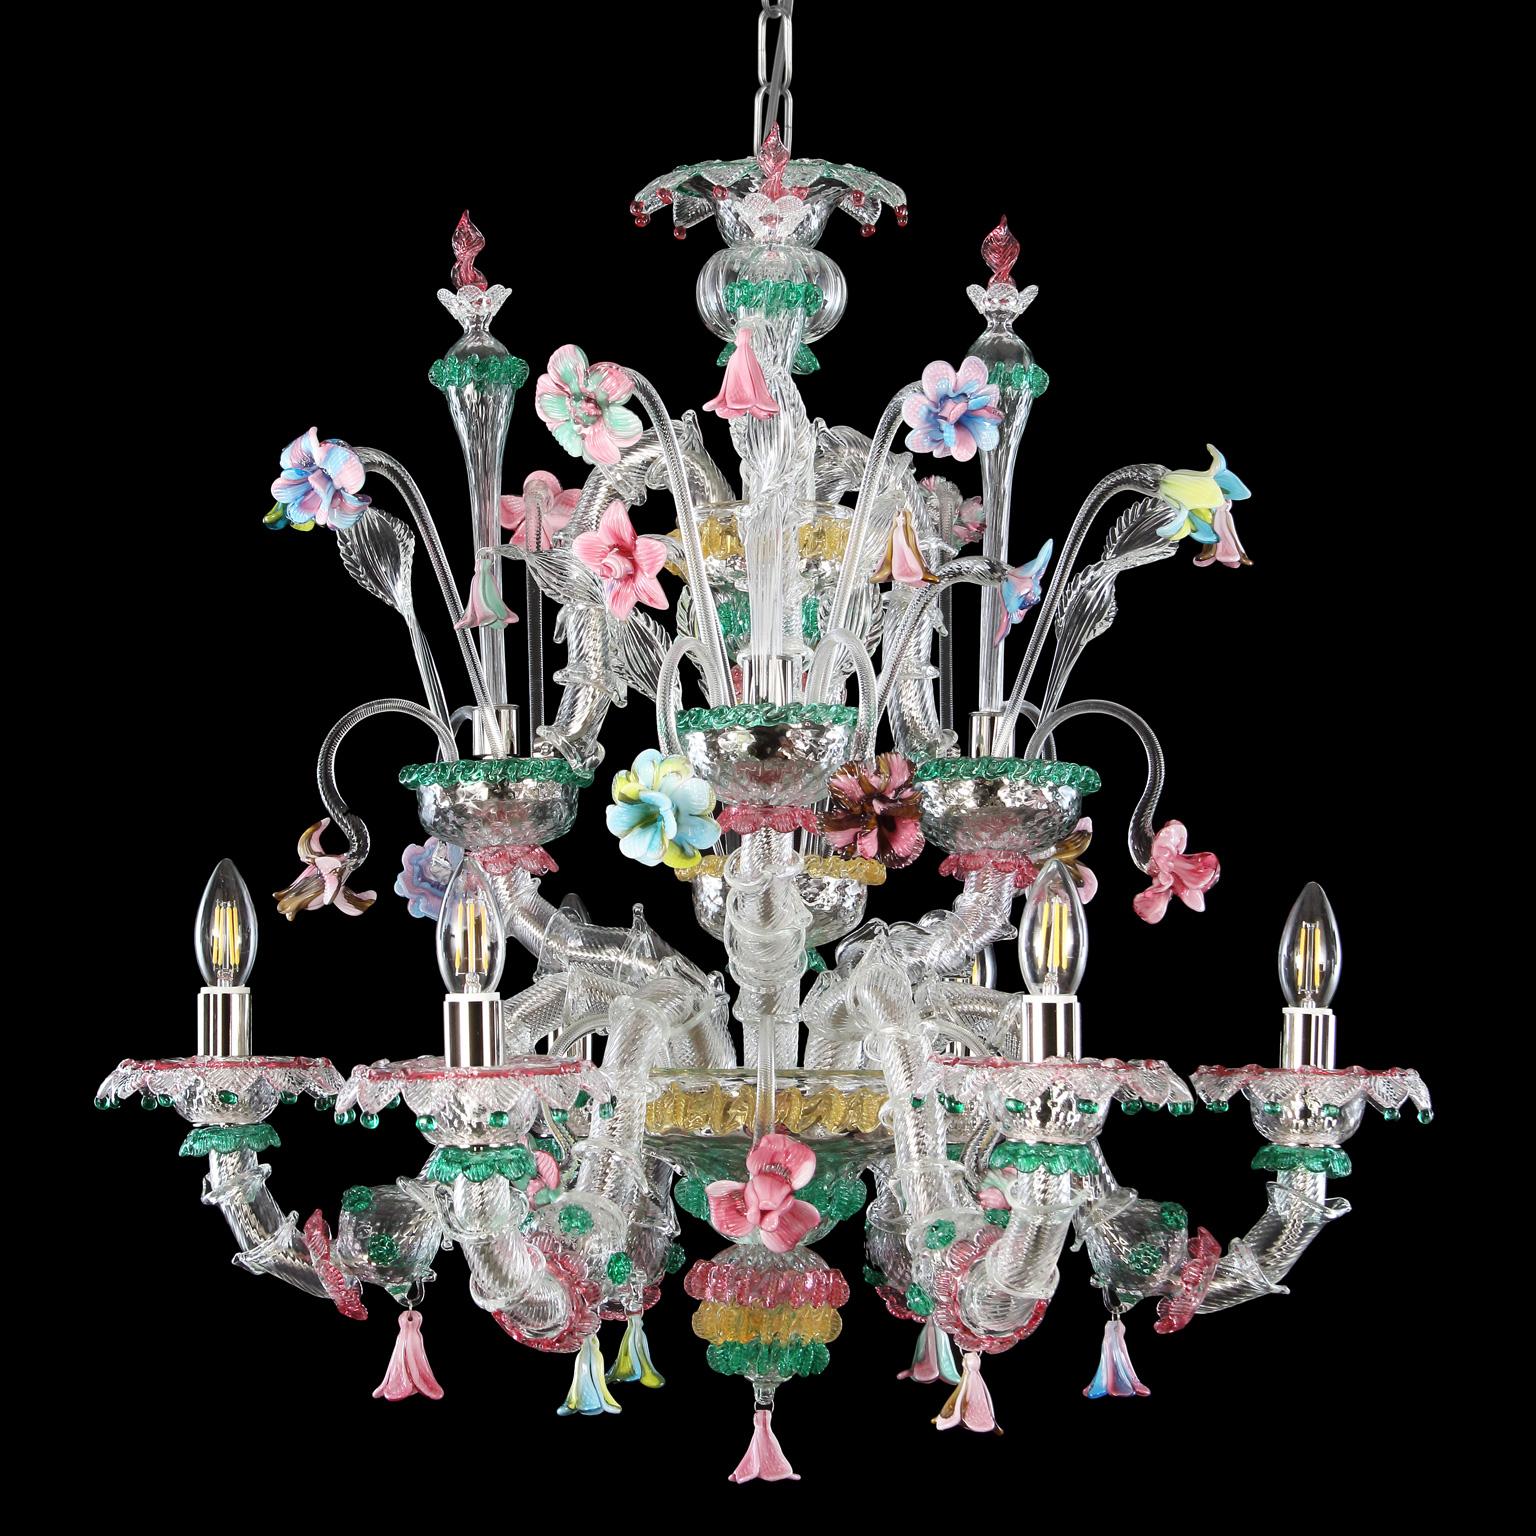 Rezzonico 6-armiger Kronleuchter aus Murano-Kristallglas, reich an mehrfarbigen Details mit einer Dominanz der grünen Farbe, von Multiforme.
Dieser künstlerische Kronleuchter aus Glas ist ein elegantes und zartes Beleuchtungsobjekt, das in